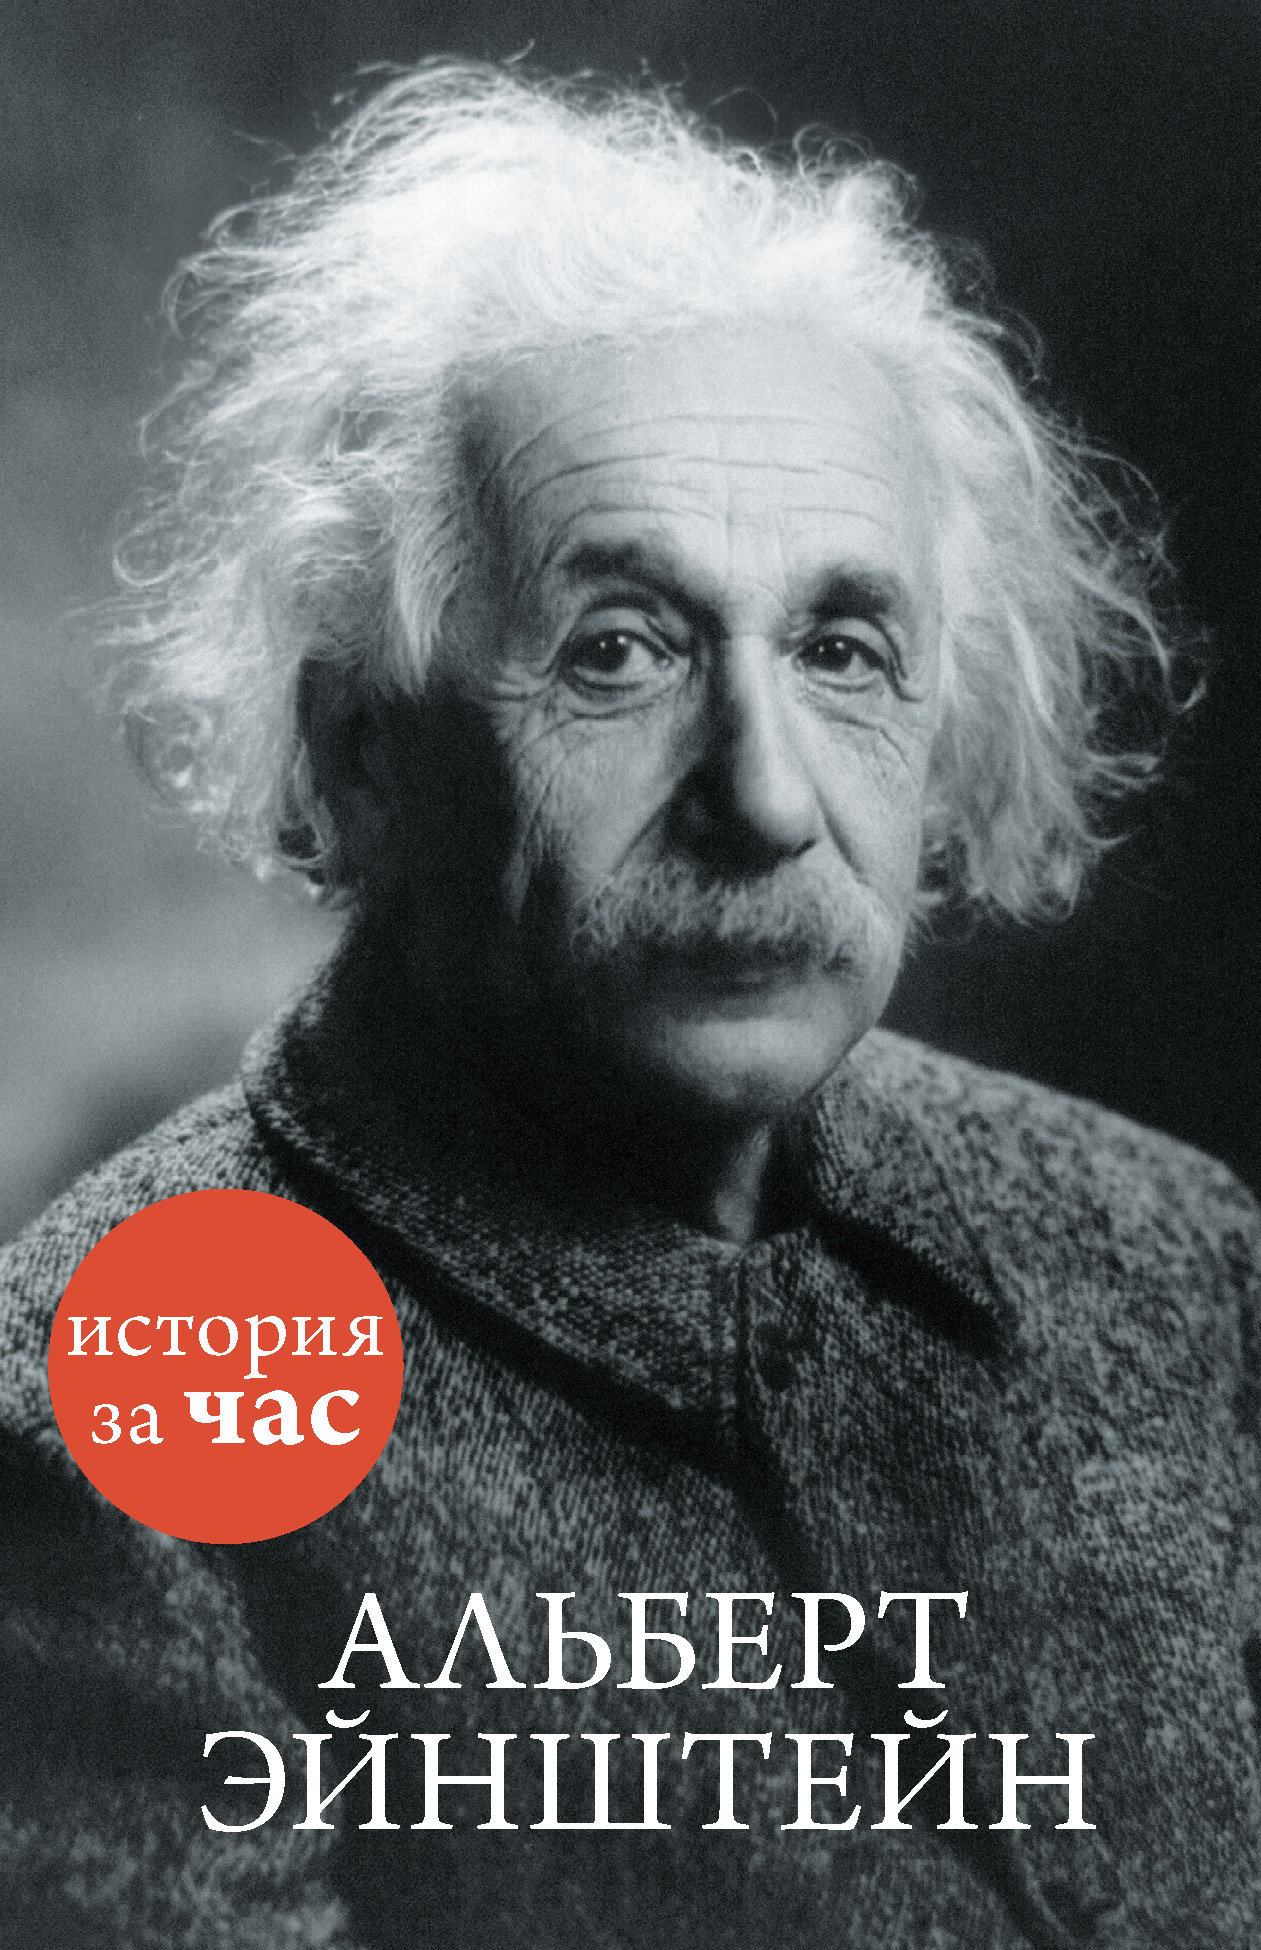 Книга Альберт Эйнштейн из серии , созданная Сергей Иванов, может относится к жанру История, Публицистика: прочее. Стоимость электронной книги Альберт Эйнштейн с идентификатором 9964195 составляет 54.99 руб.